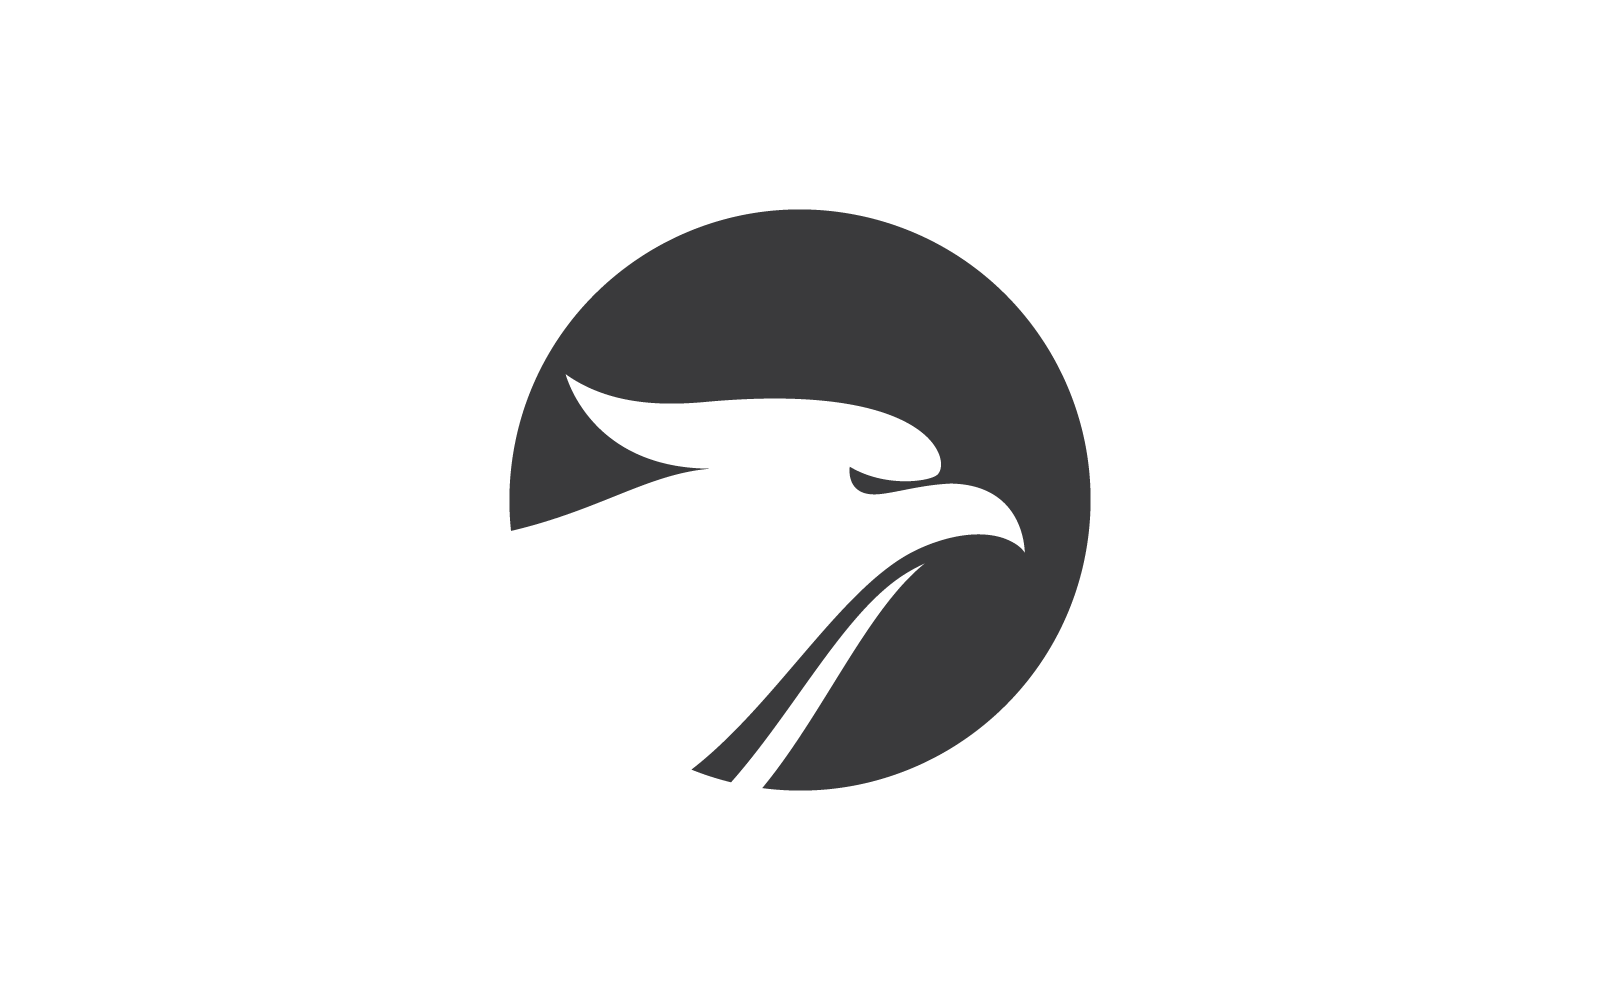 Falcon eagle bird illustration vector logo flat design Logo Template